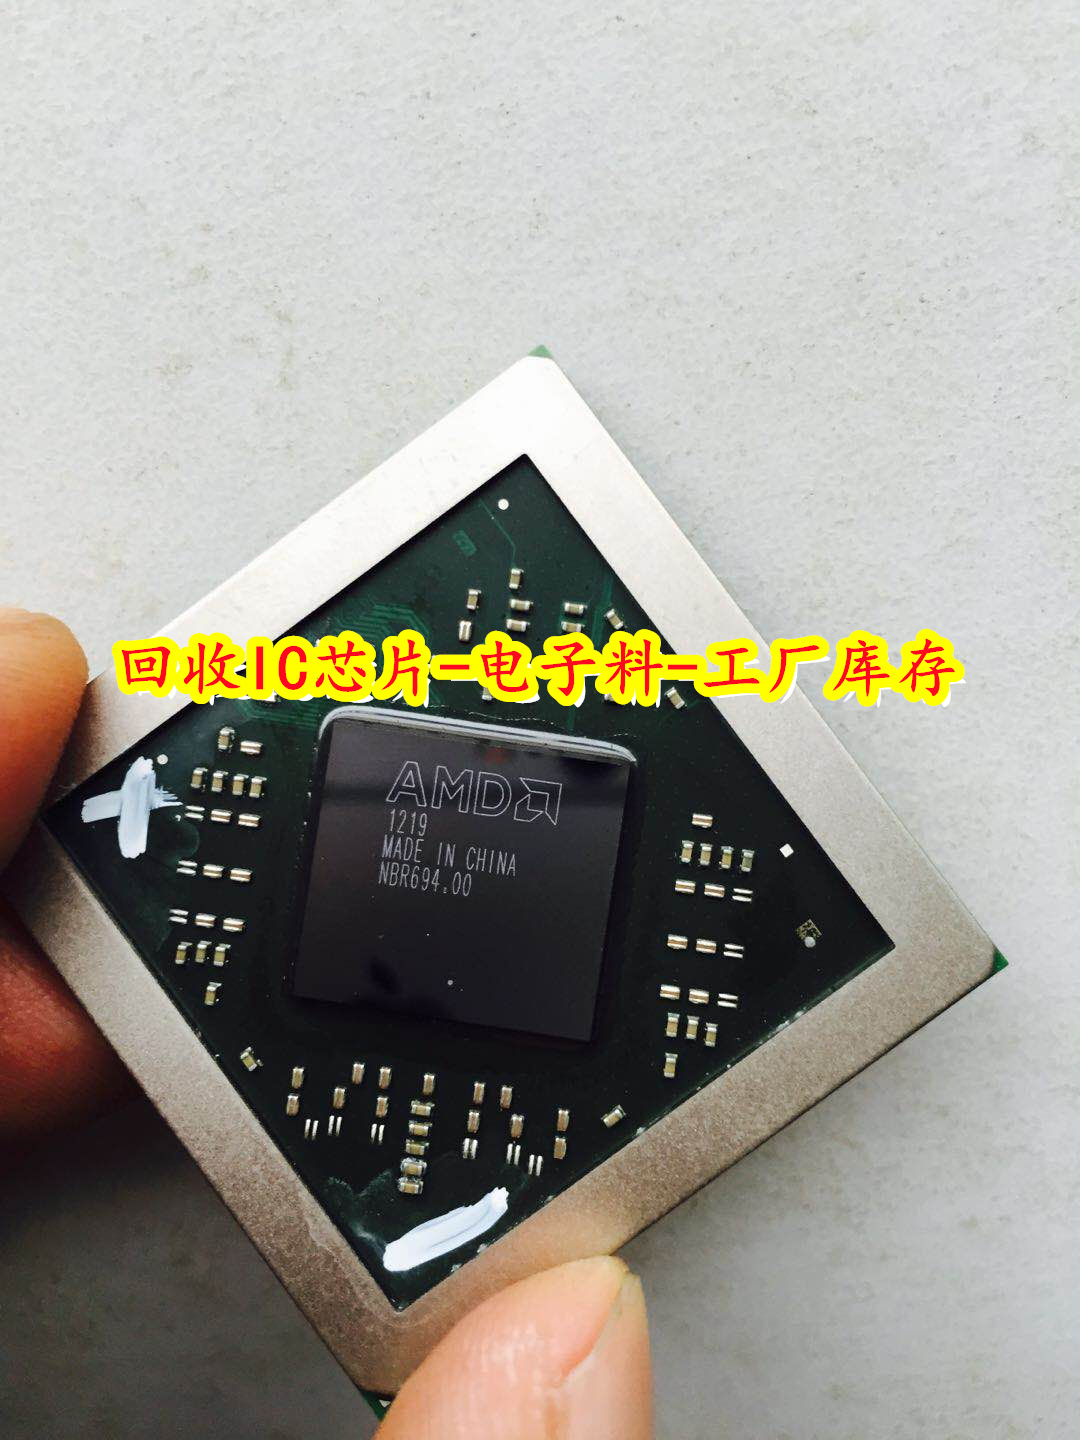 无锡回收AMD芯片 回收感光芯片